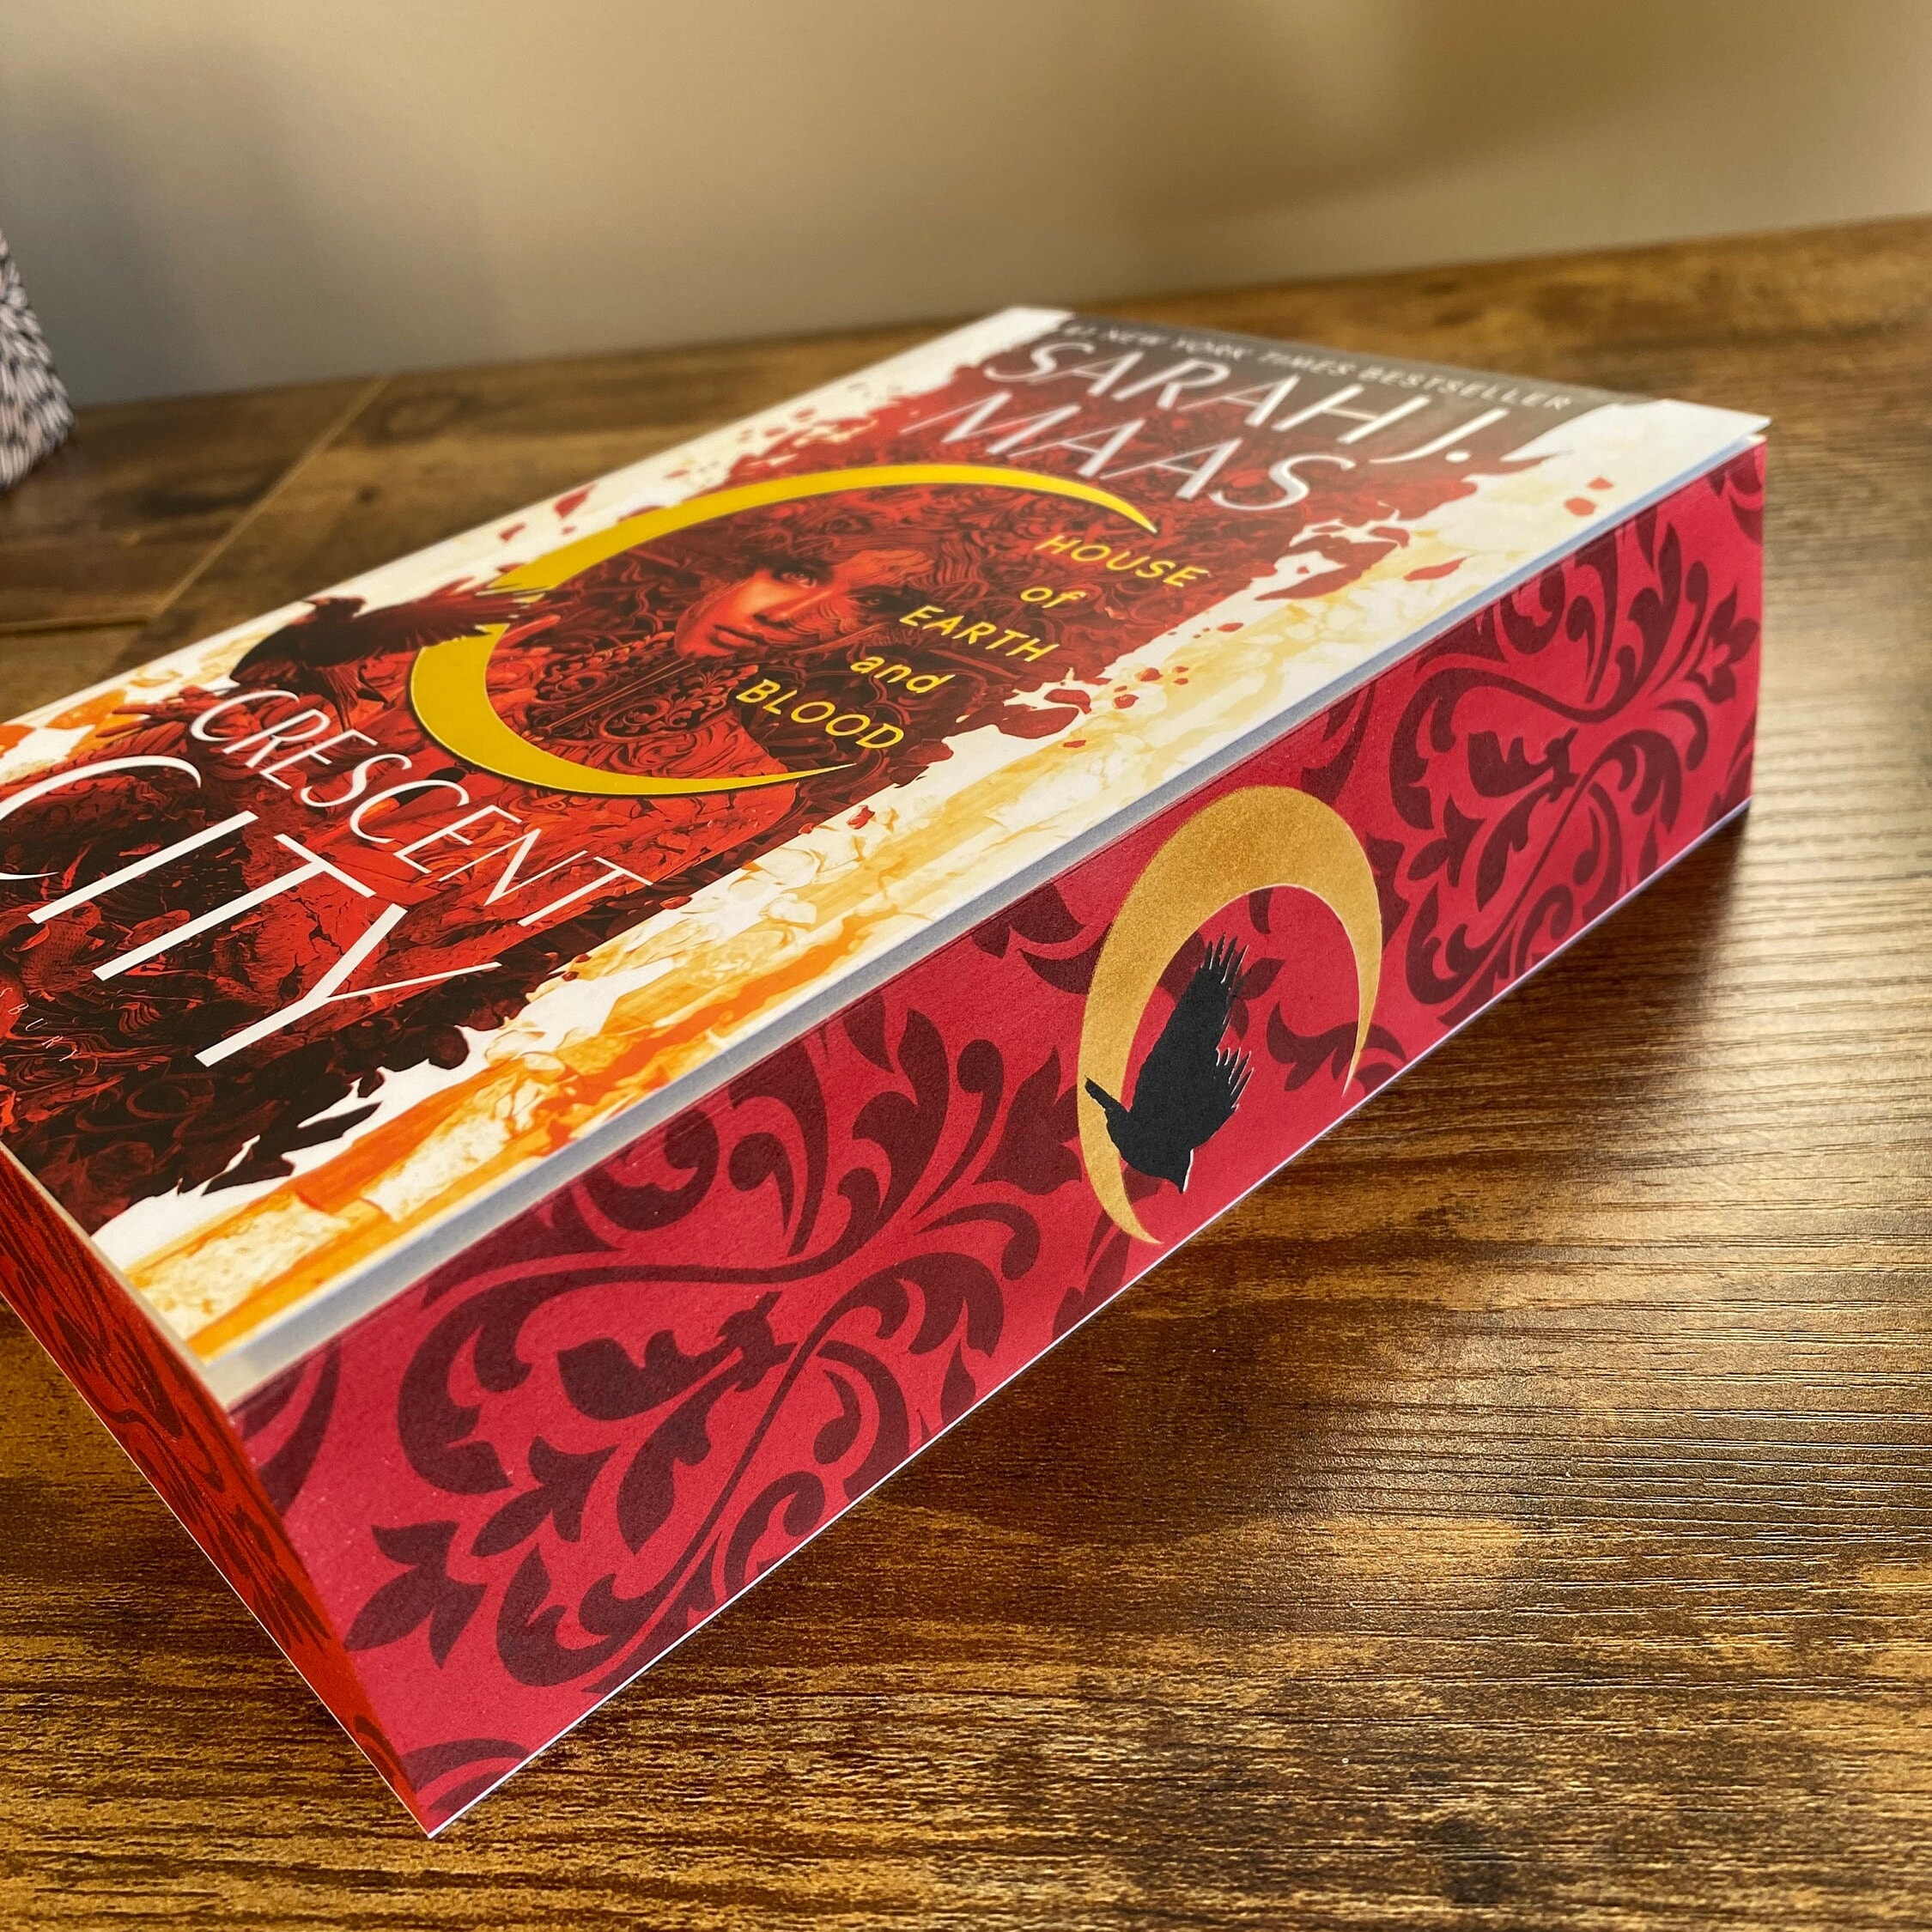 TILE-PATTERN SPRAYED EDGES 🔵 - Bloomsbury Publishing UK